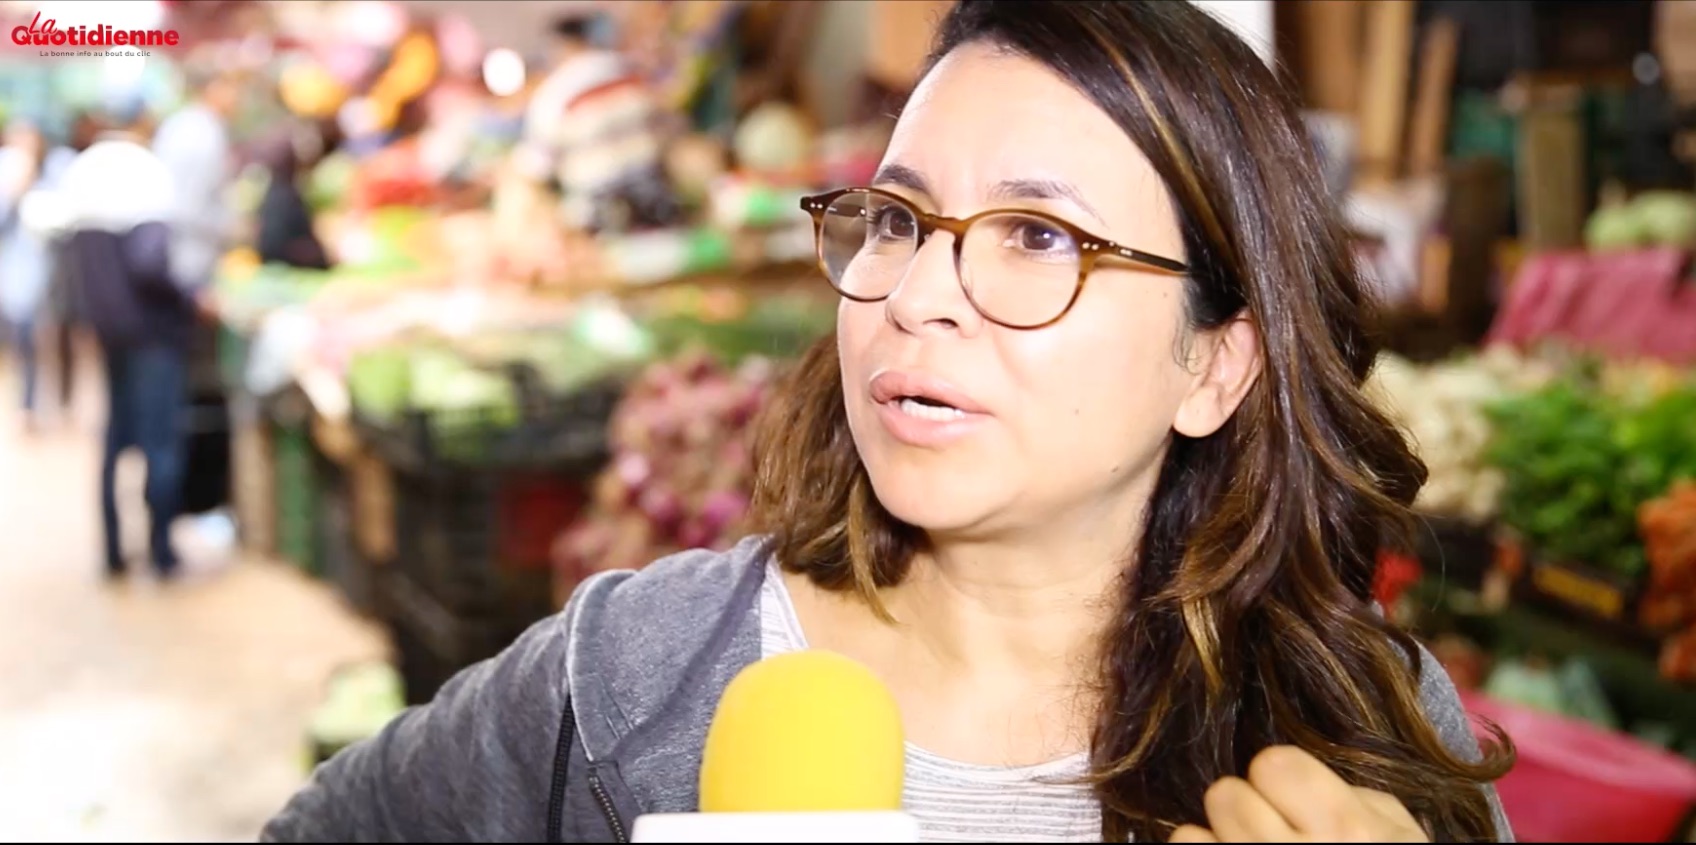 Prix des denrées alimentaires : Ce qu'en pensent les Marocains